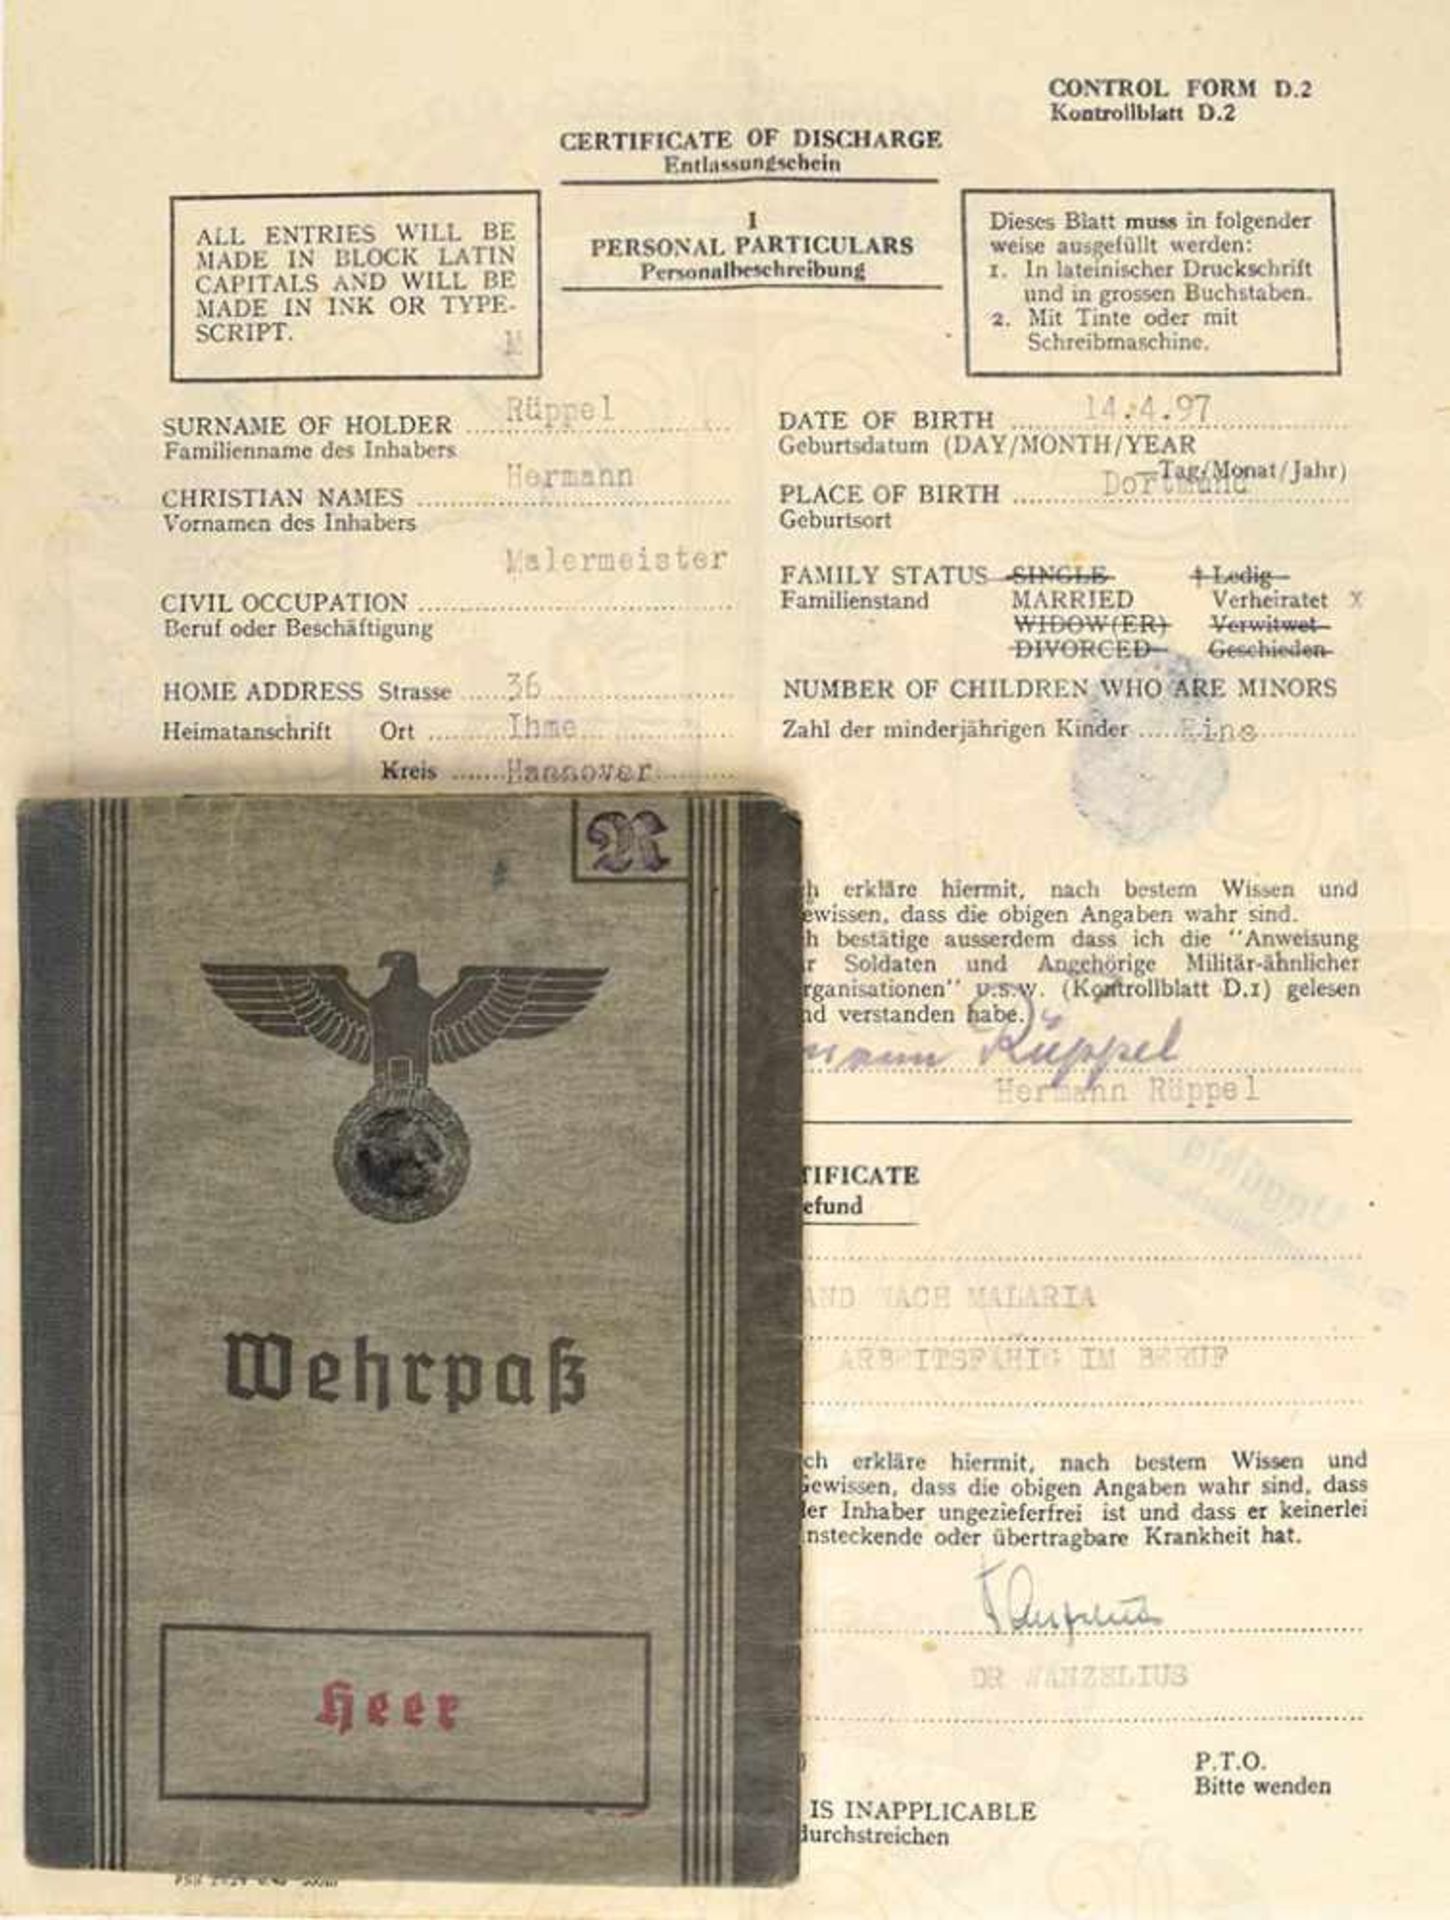 WEHRPAß, Feldwebel, WK- u. Freikorps-Veteran, Land.-Schtz.-Btl. I/XI u. 701 Hannover, Eintr. 1938-